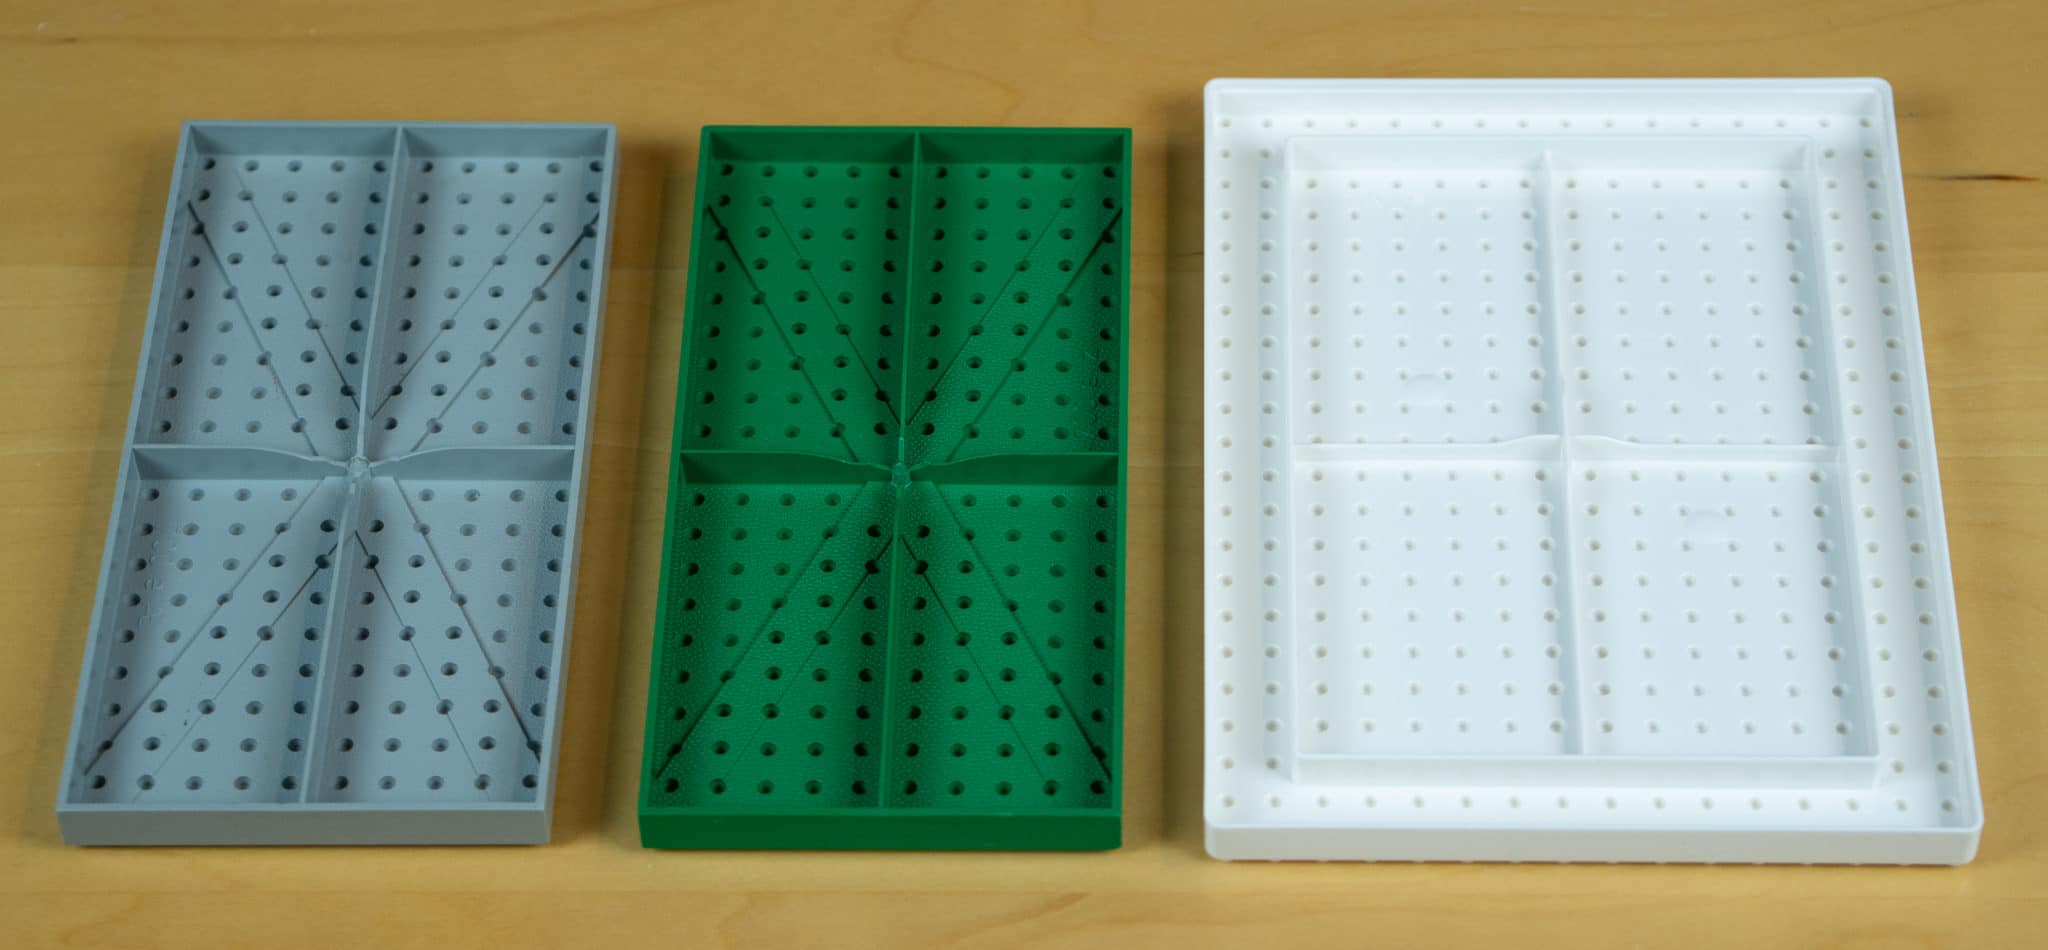 IKEA lança linha de caixas que são ideais para você guardar seus LEGOs • B9